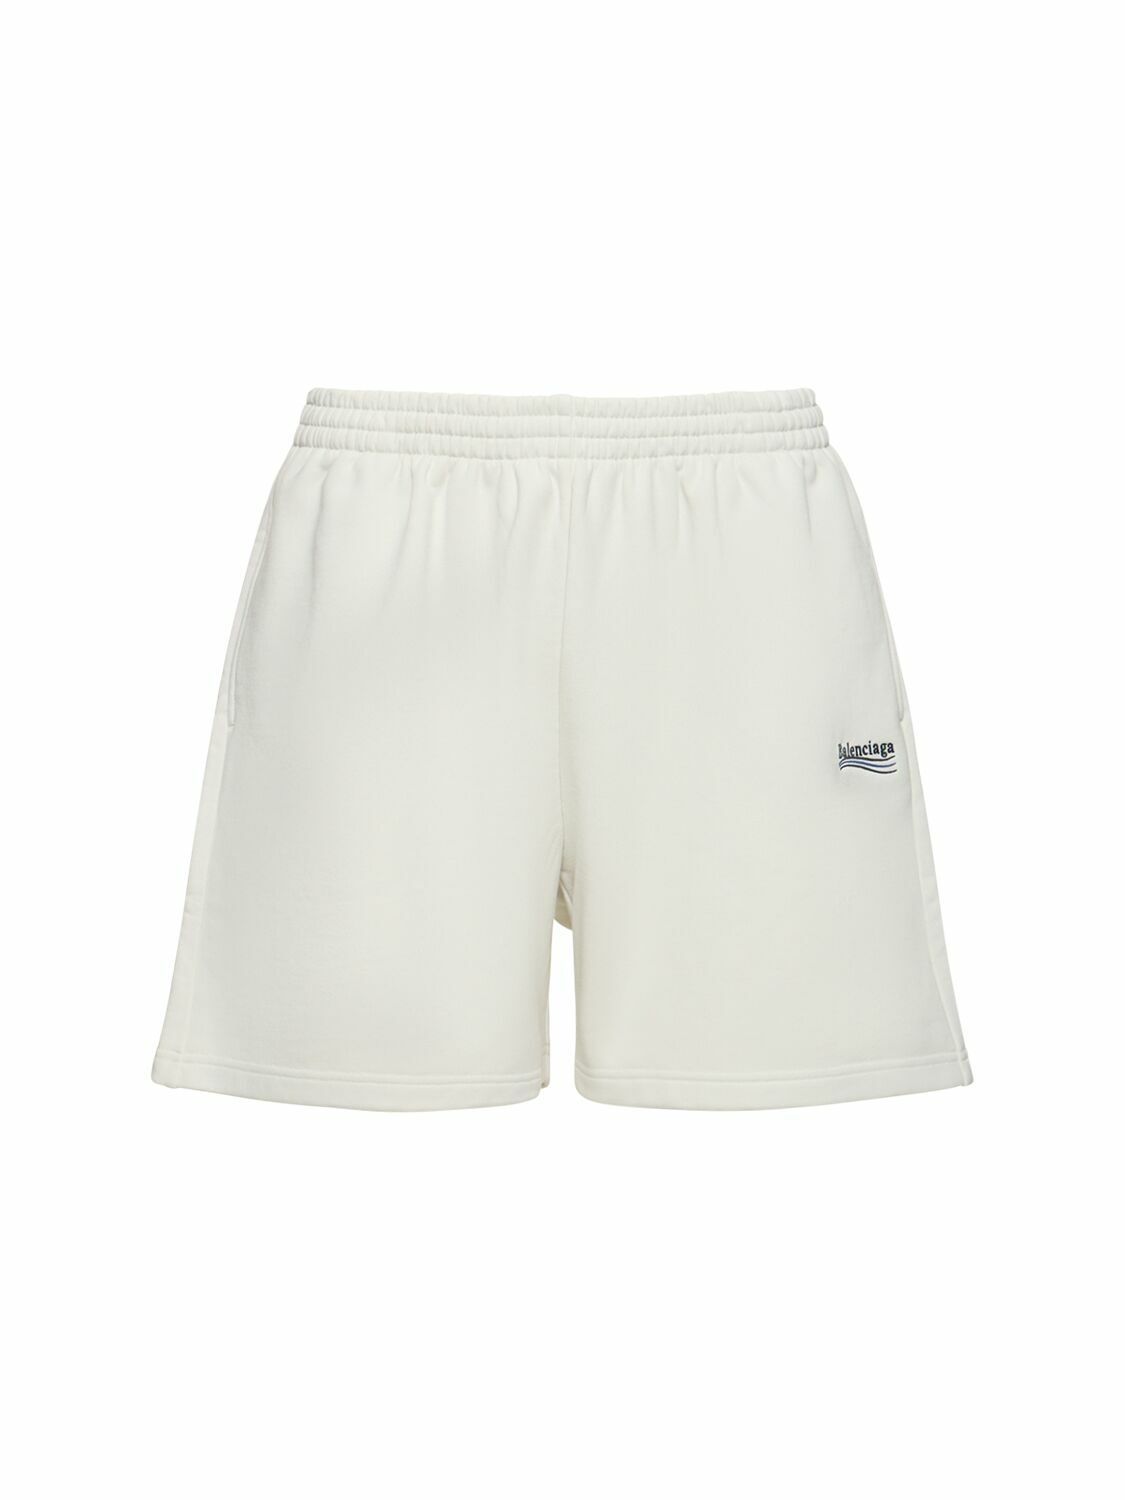 Photo: BALENCIAGA - Cotton Shorts